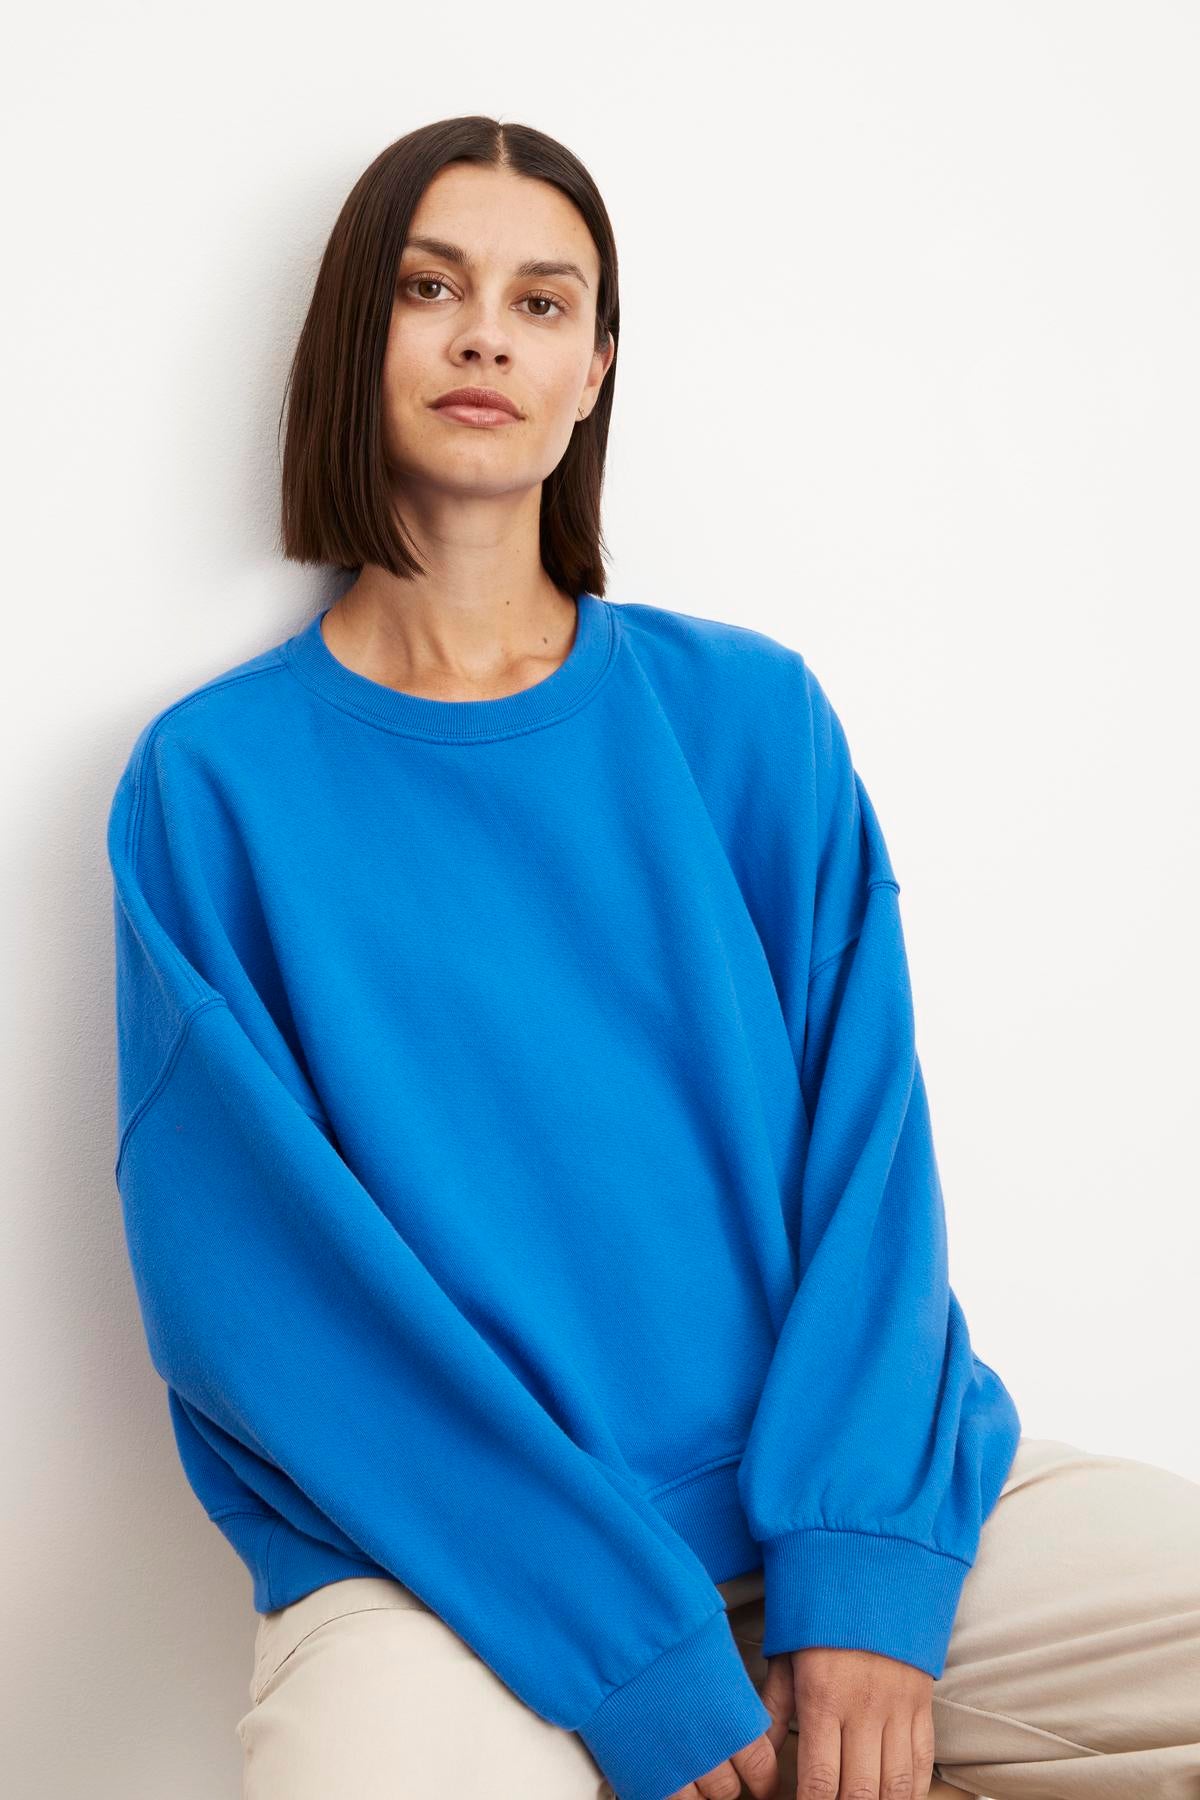 The model is wearing a Velvet by Graham & Spencer Margot Oversized Sweatshirt.-35961316278465